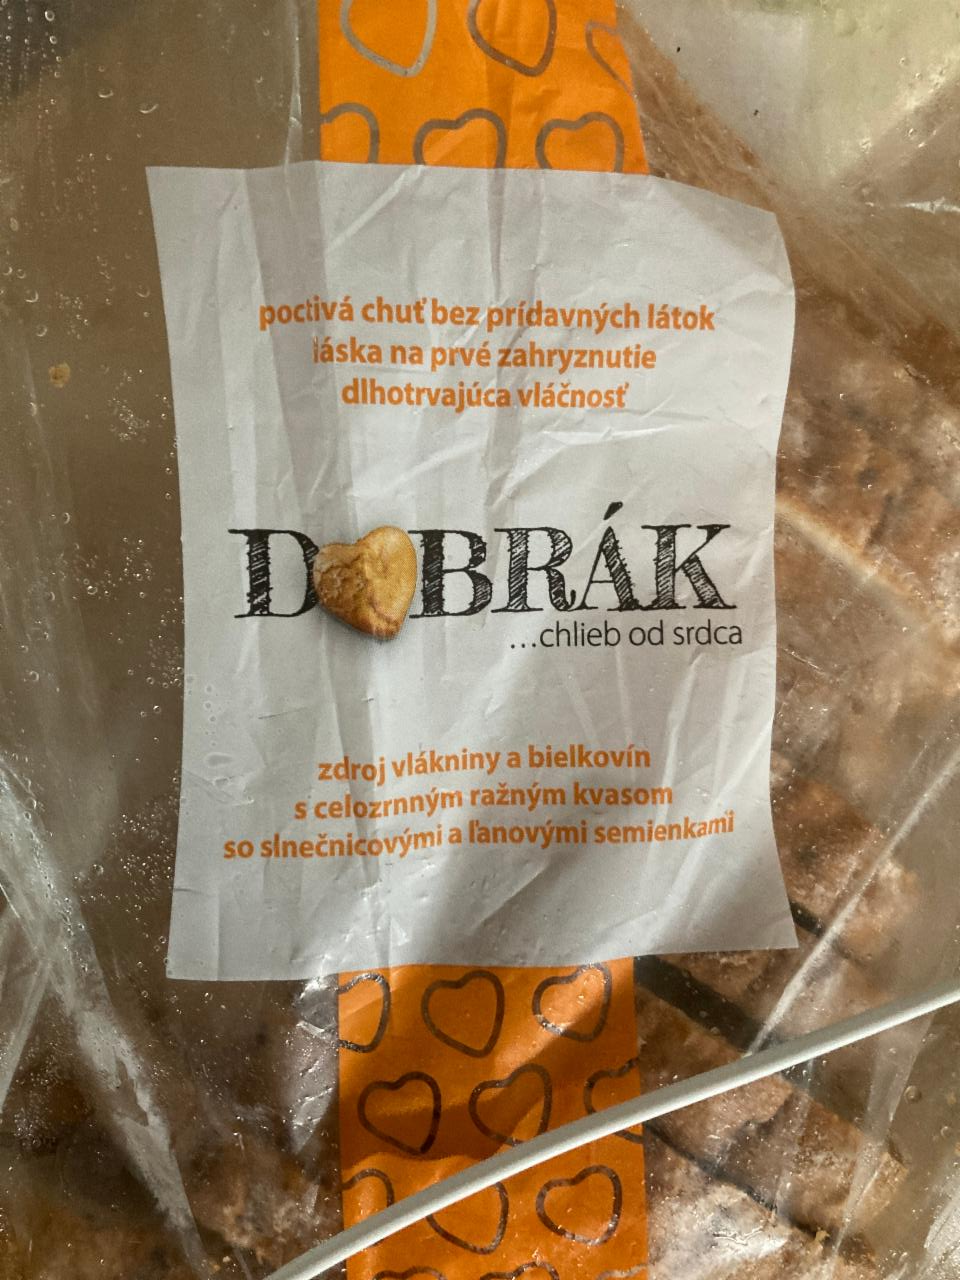 Fotografie - Dobrák - chlieb